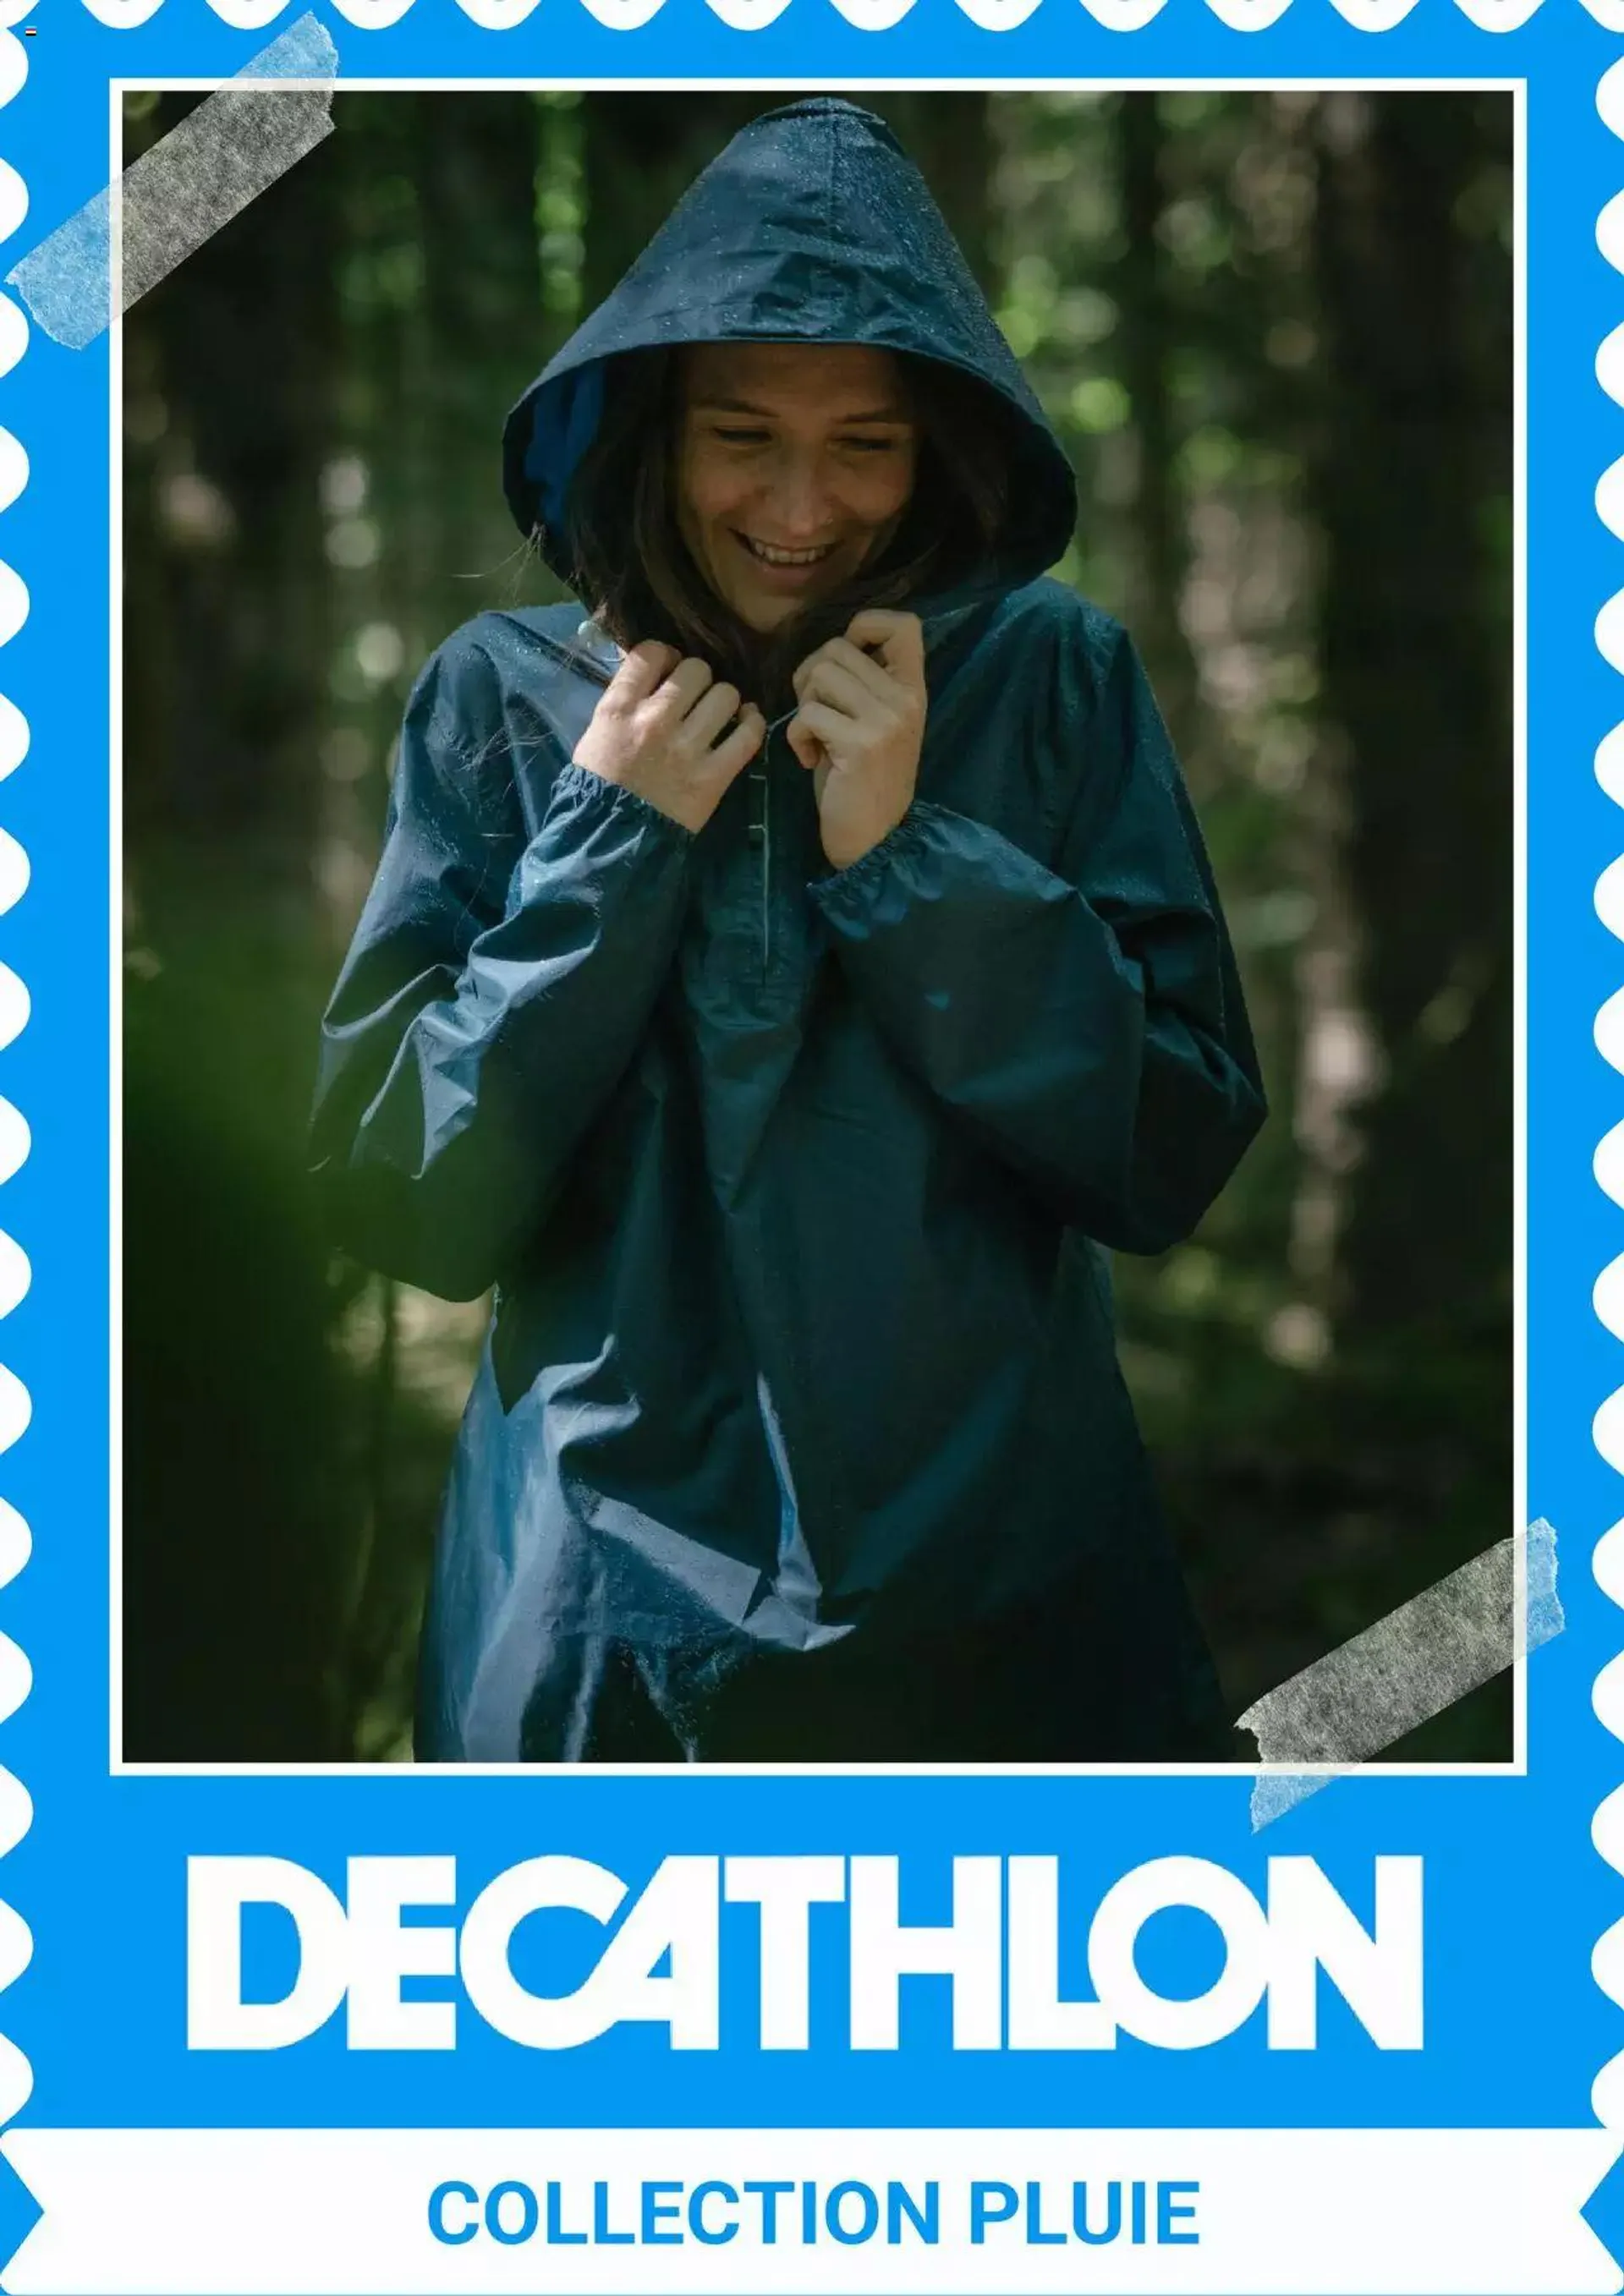 Decathlon folder/publicité